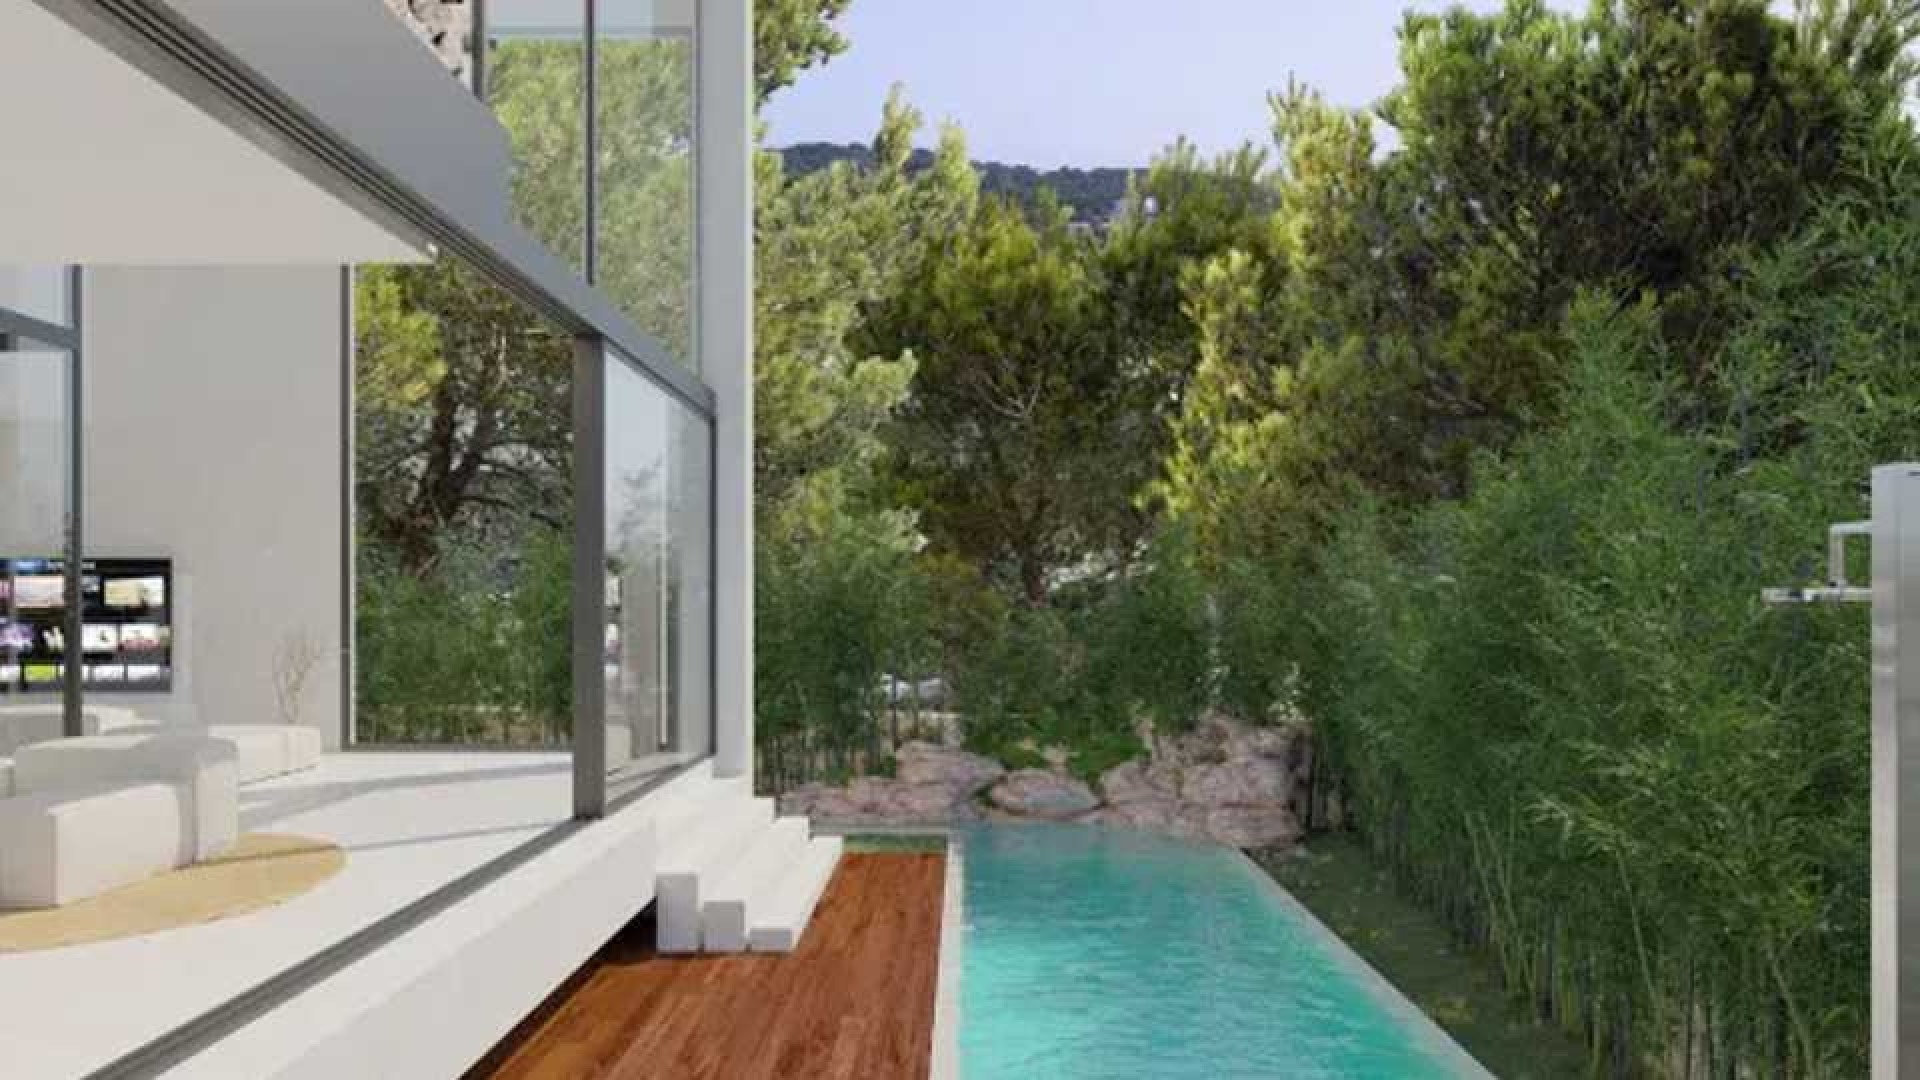 Wesley Sneijder verkoopt zijn villa met megakorting. Zie foto's 4